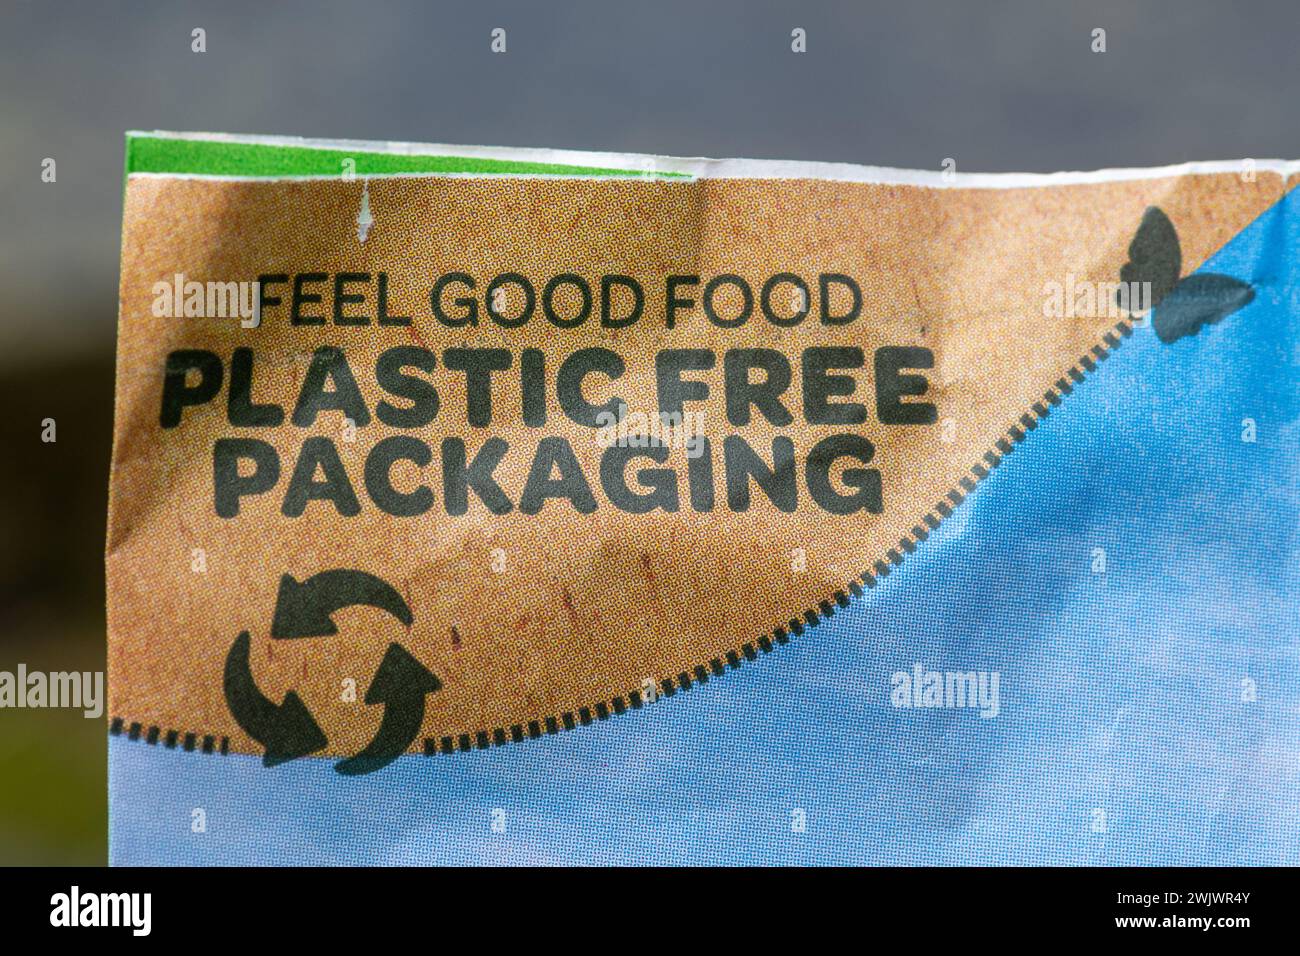 Nourriture pour oiseaux dans un emballage sans plastique, Royaume-Uni. Concept : réduction du remplacement des emballages en plastique Banque D'Images